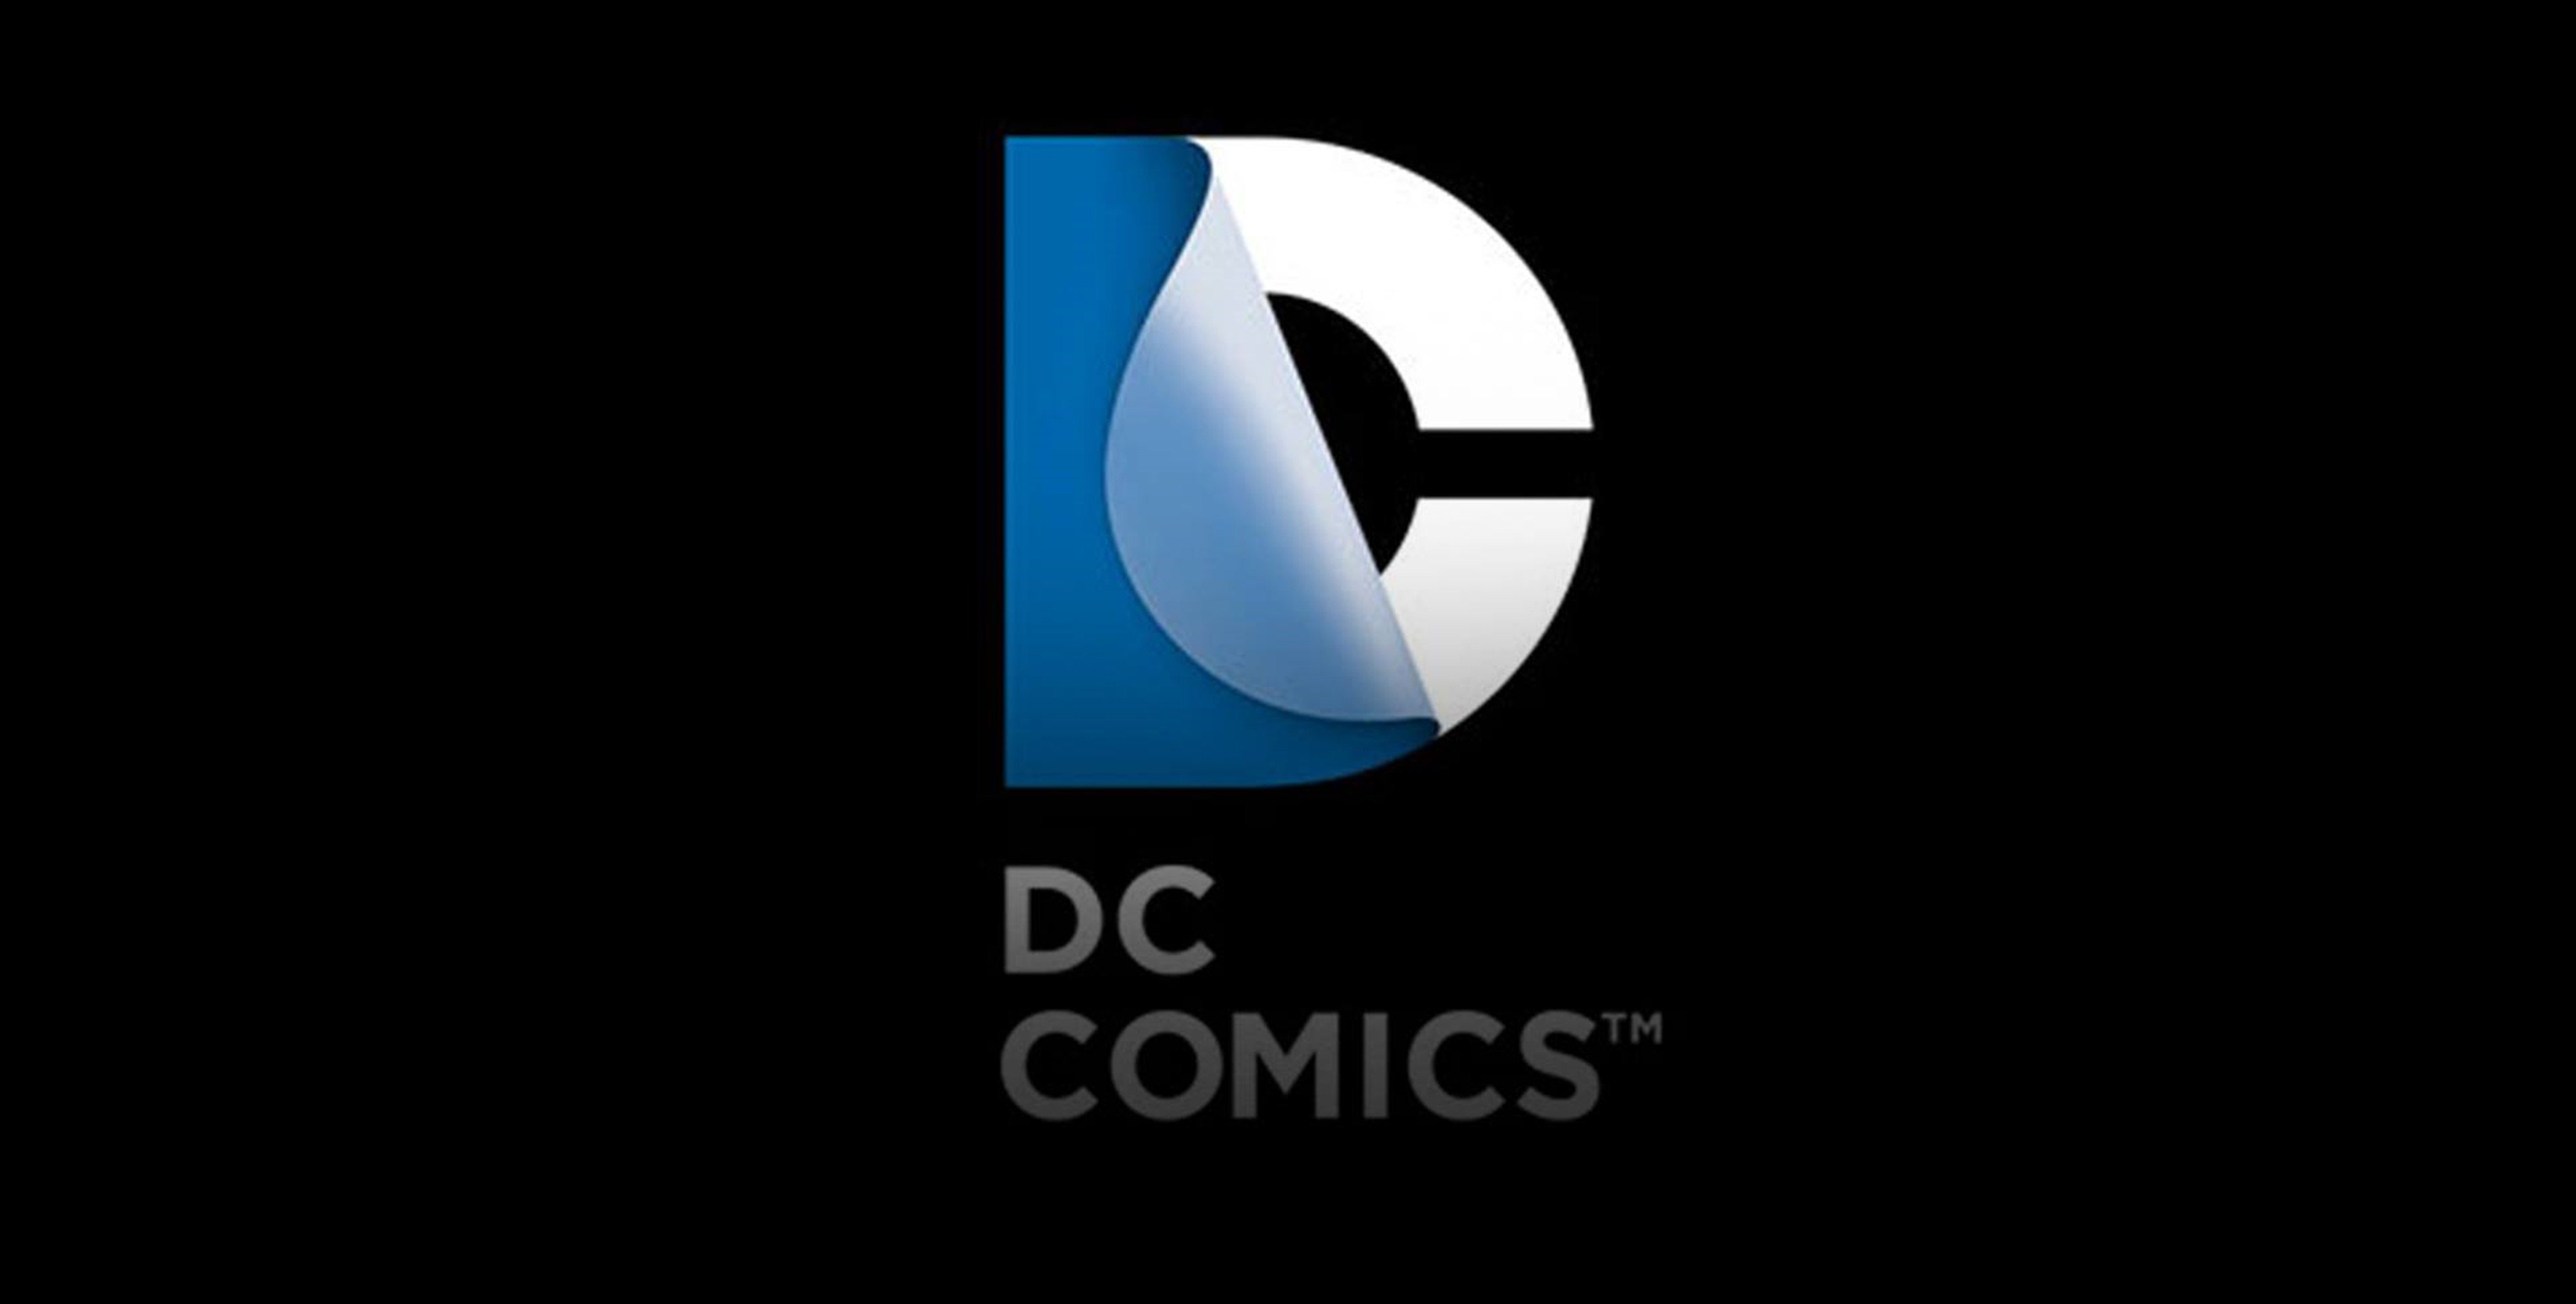 Dc comics logo superheroes comics wallpaper 4000x2025 345395